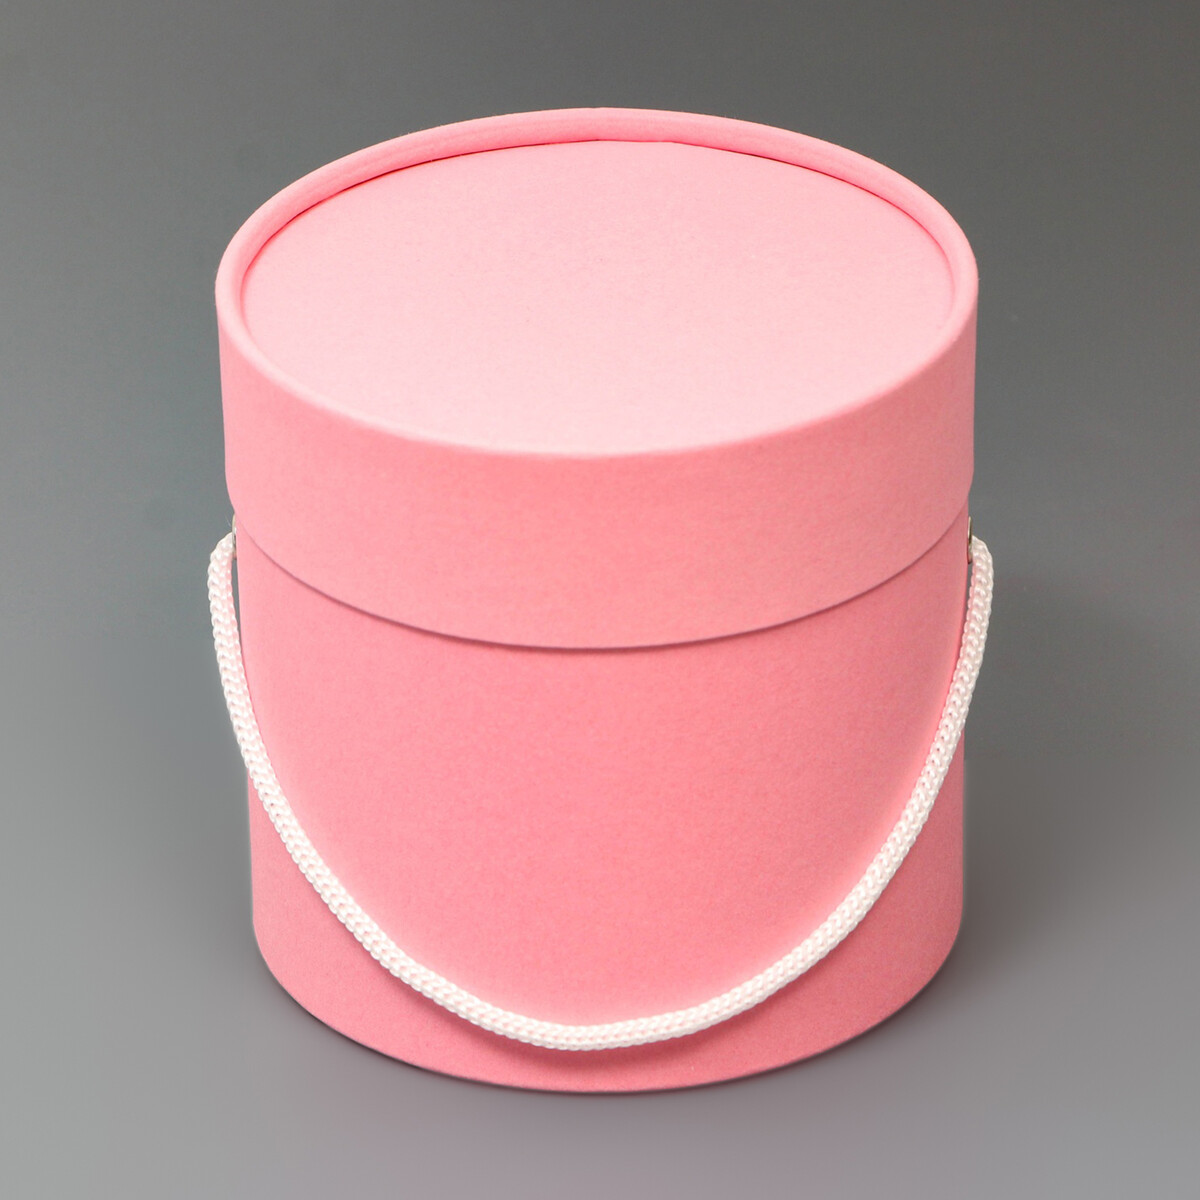 Подарочная коробка, круглая, розовая,с шнурком, 12 х 12 см подарочная коробка круглая